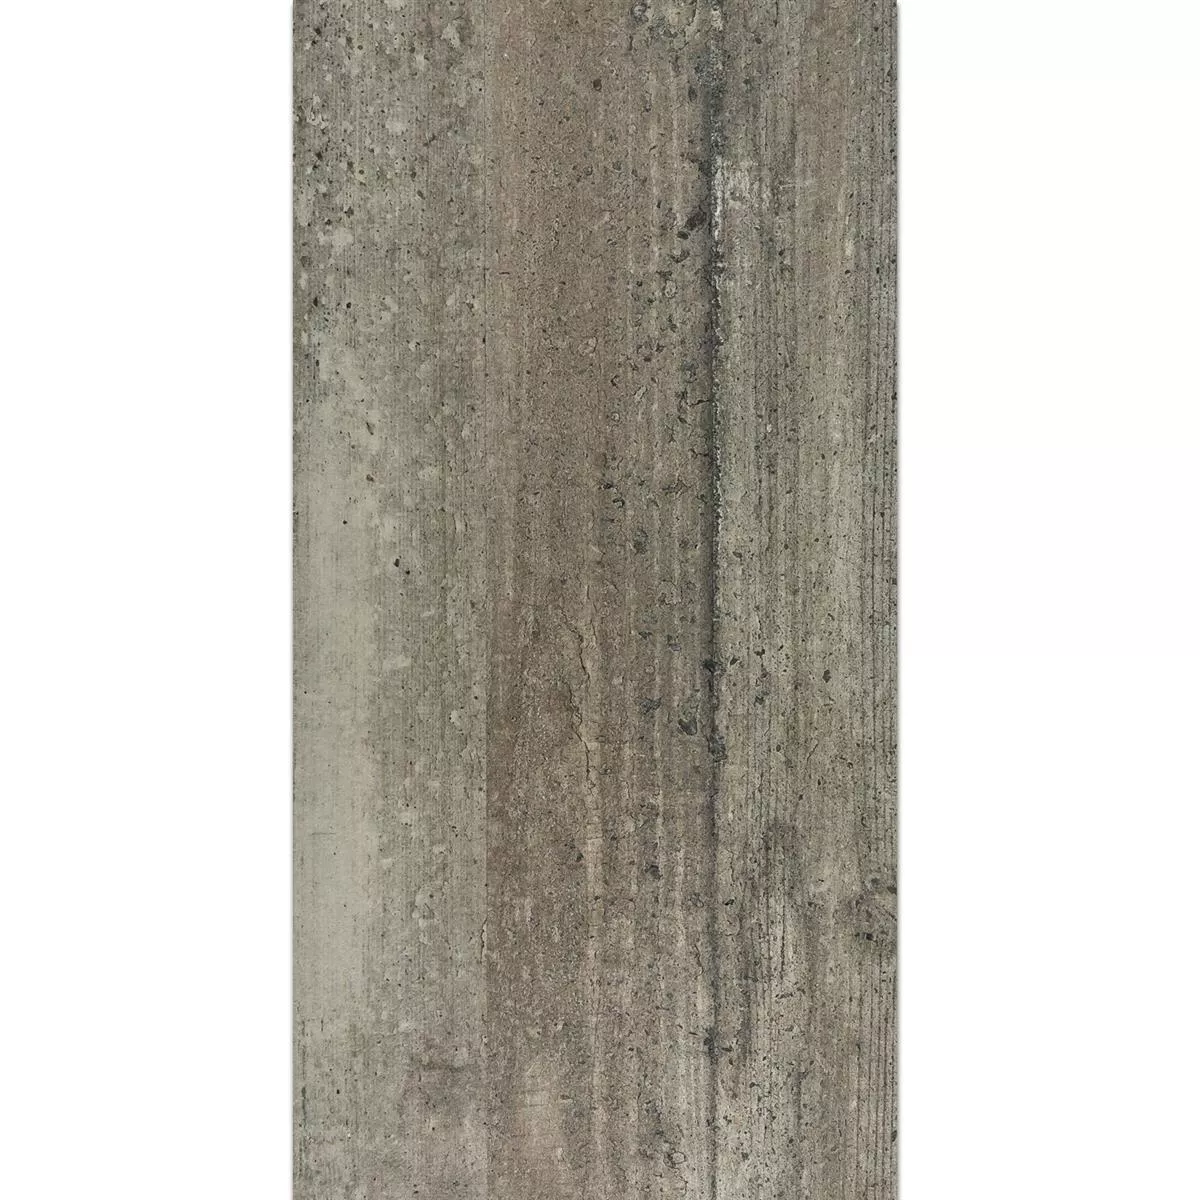 Próbka Płytki Podłogowe Cement Optyka Sambuco Szary 30x90cm